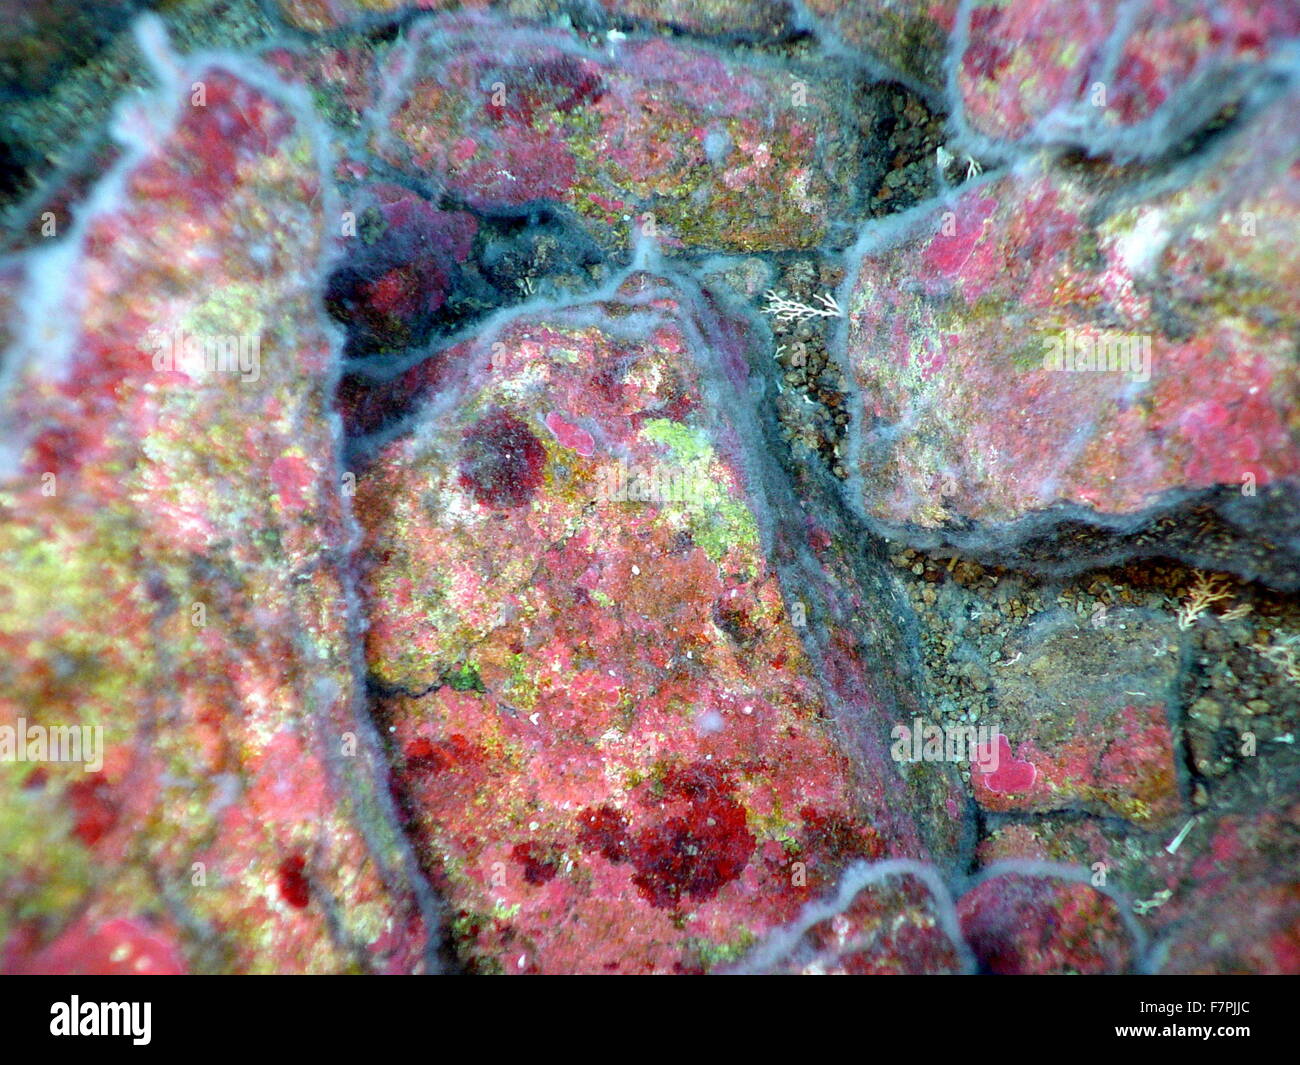 Flecken von roten und grünen Algen inkrustieren liegen unter filamentösen Bakterien Matten auf Gesteinsoberflächen. Mariana Arc Region, westlichen Pazifischen Ozean. Vom Jahr 2004 Stockfoto